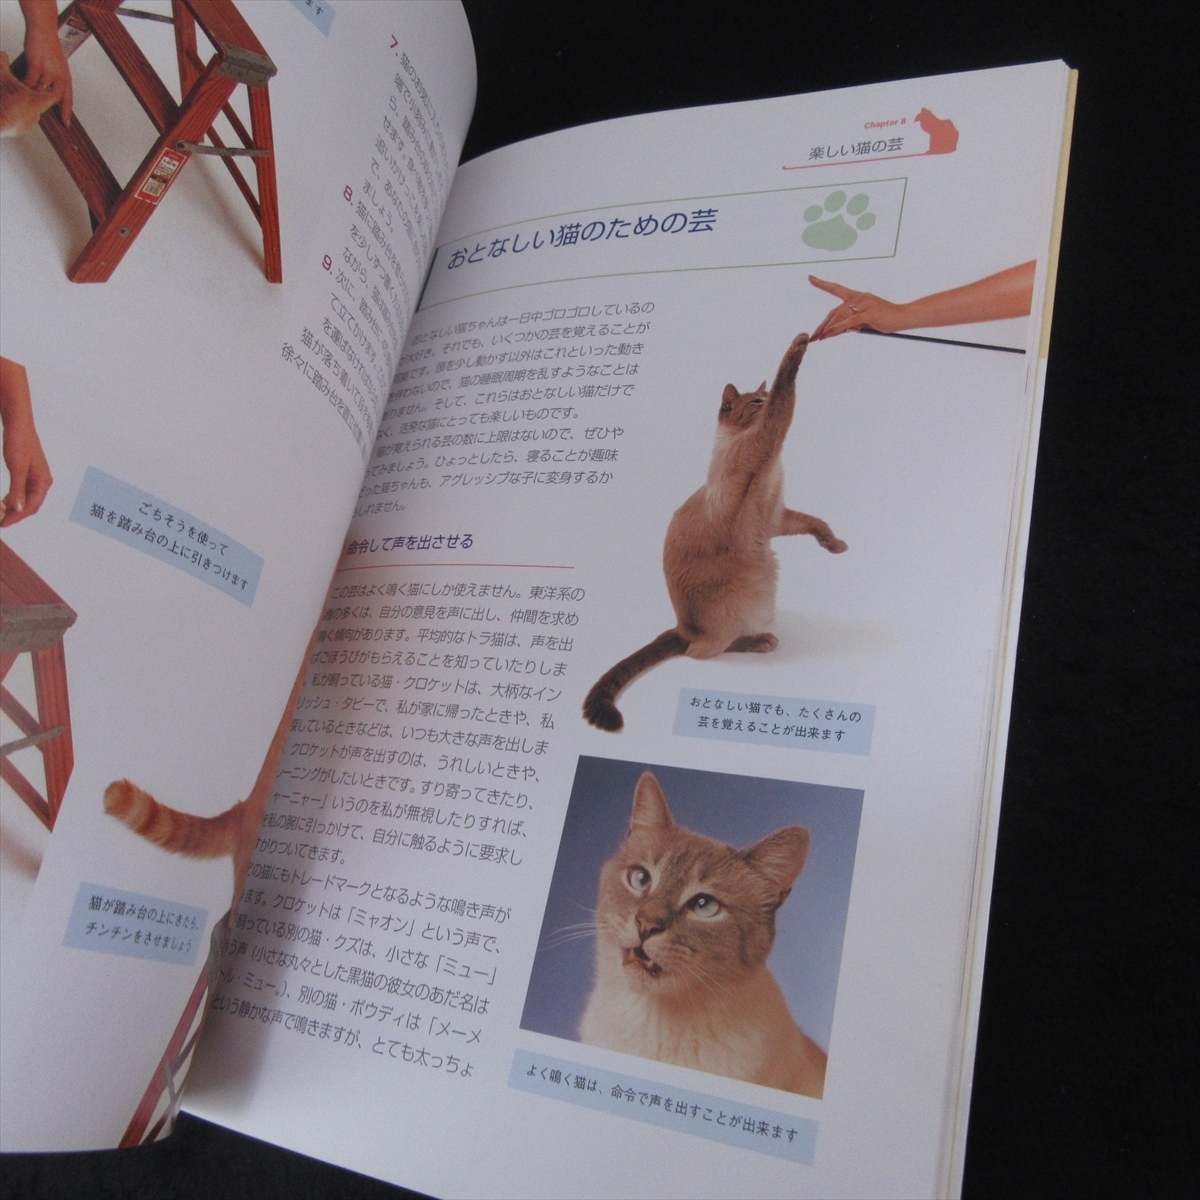  прекрасный товар *книга@[.... кошка .... кошка тренировка ]# отправка 170 иен Miriam *fi-ru Zoo babino домашнее животное жизнь фирма 1 день 10 минут воспитание прогулка .*